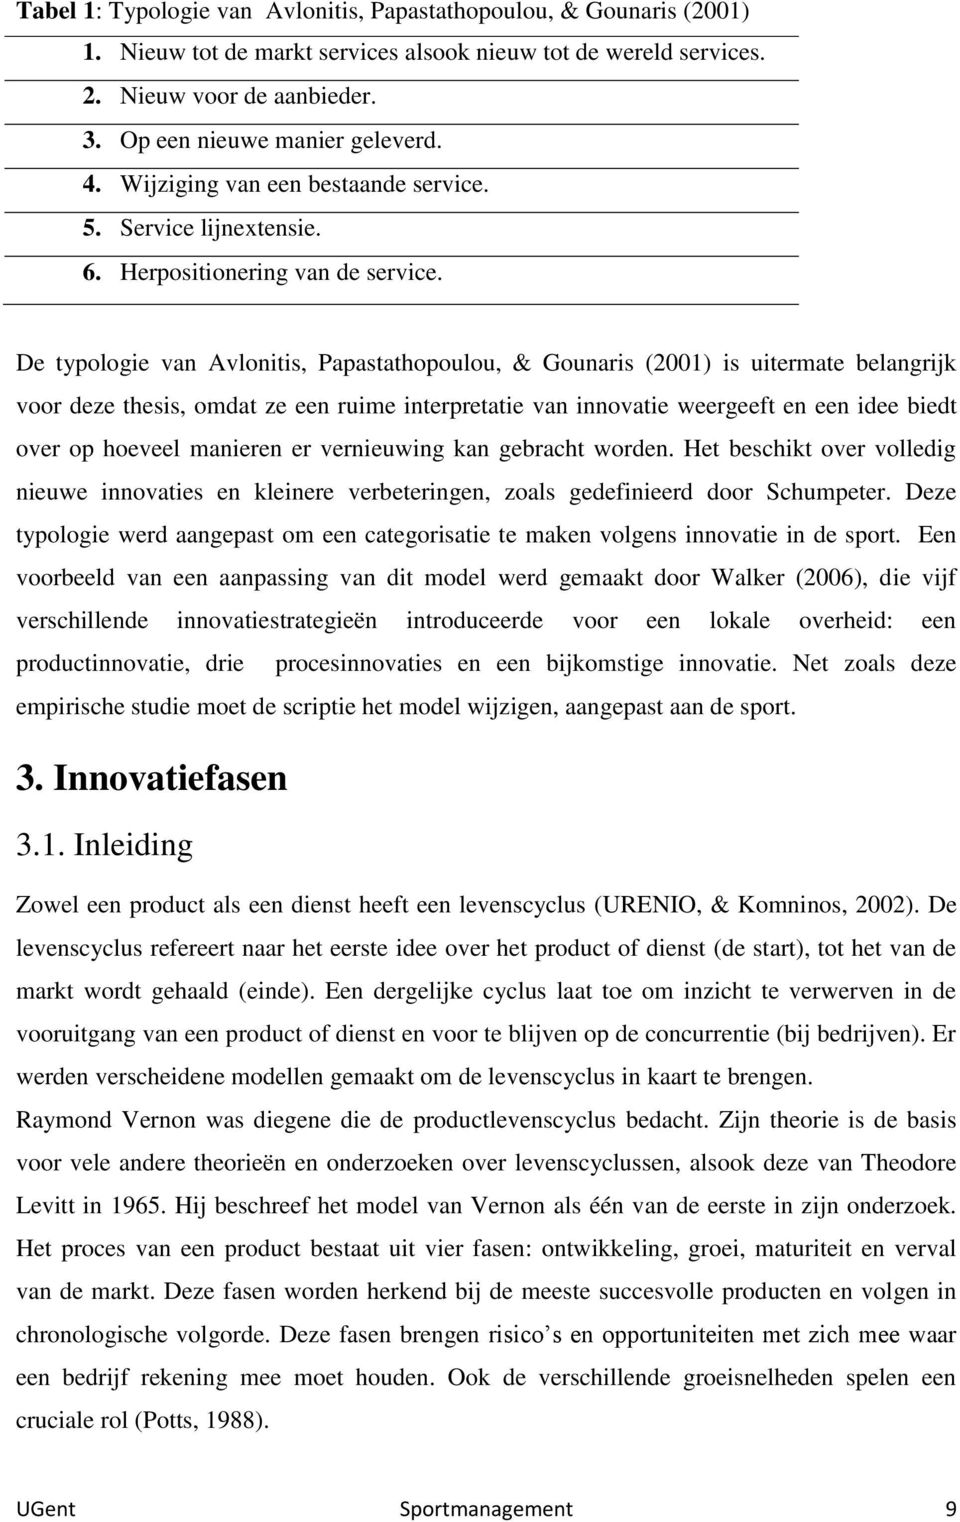 De typologie van Avlonitis, Papastathopoulou, & Gounaris (2001) is uitermate belangrijk voor deze thesis, omdat ze een ruime interpretatie van innovatie weergeeft en een idee biedt over op hoeveel